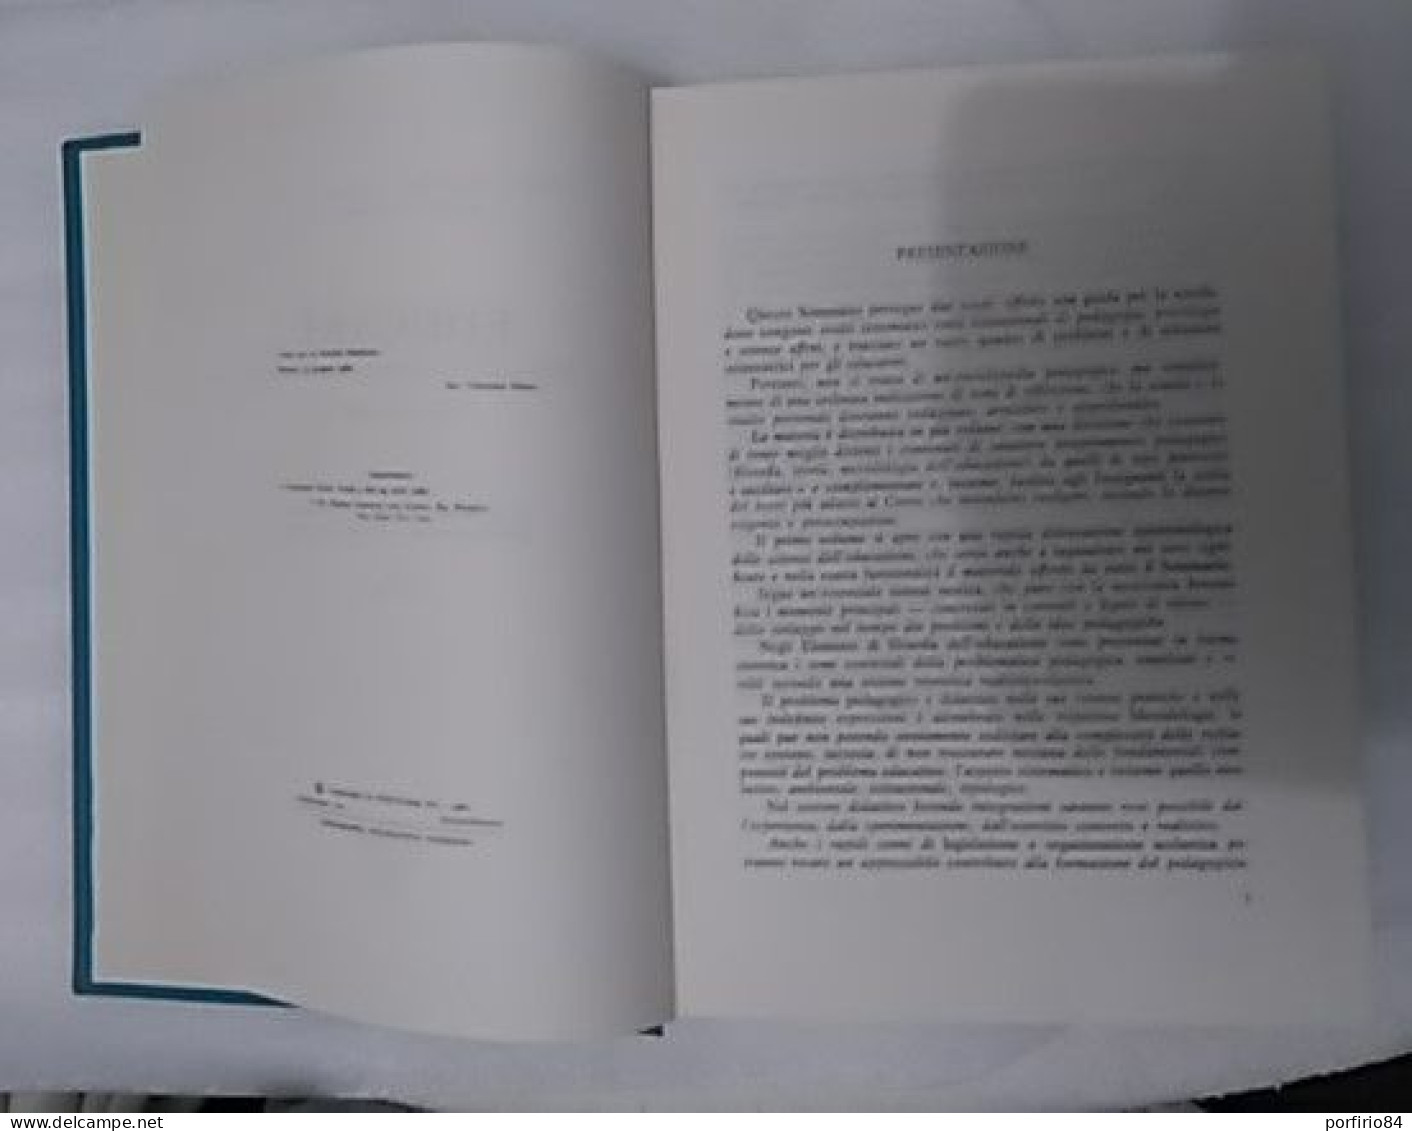 AA. VV. EDUCARE Sommario di scienze pedagogiche 1962 PAS-VERLACH 3 volumi